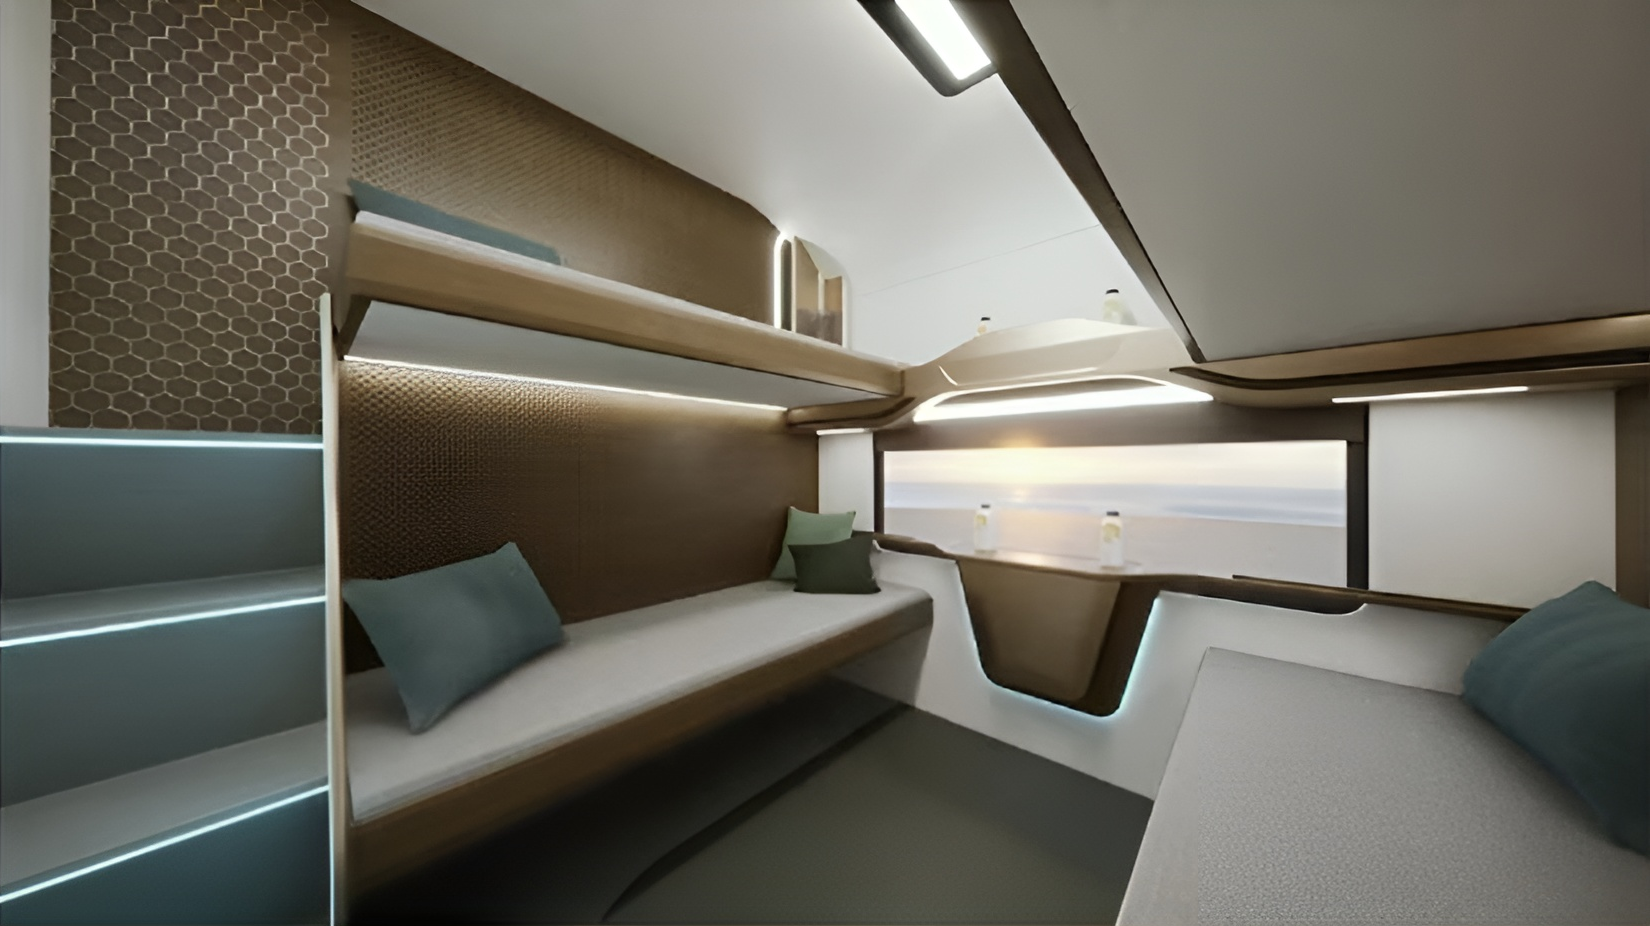 Возможный дизайн спальных мест в вагонах Vande Bharat